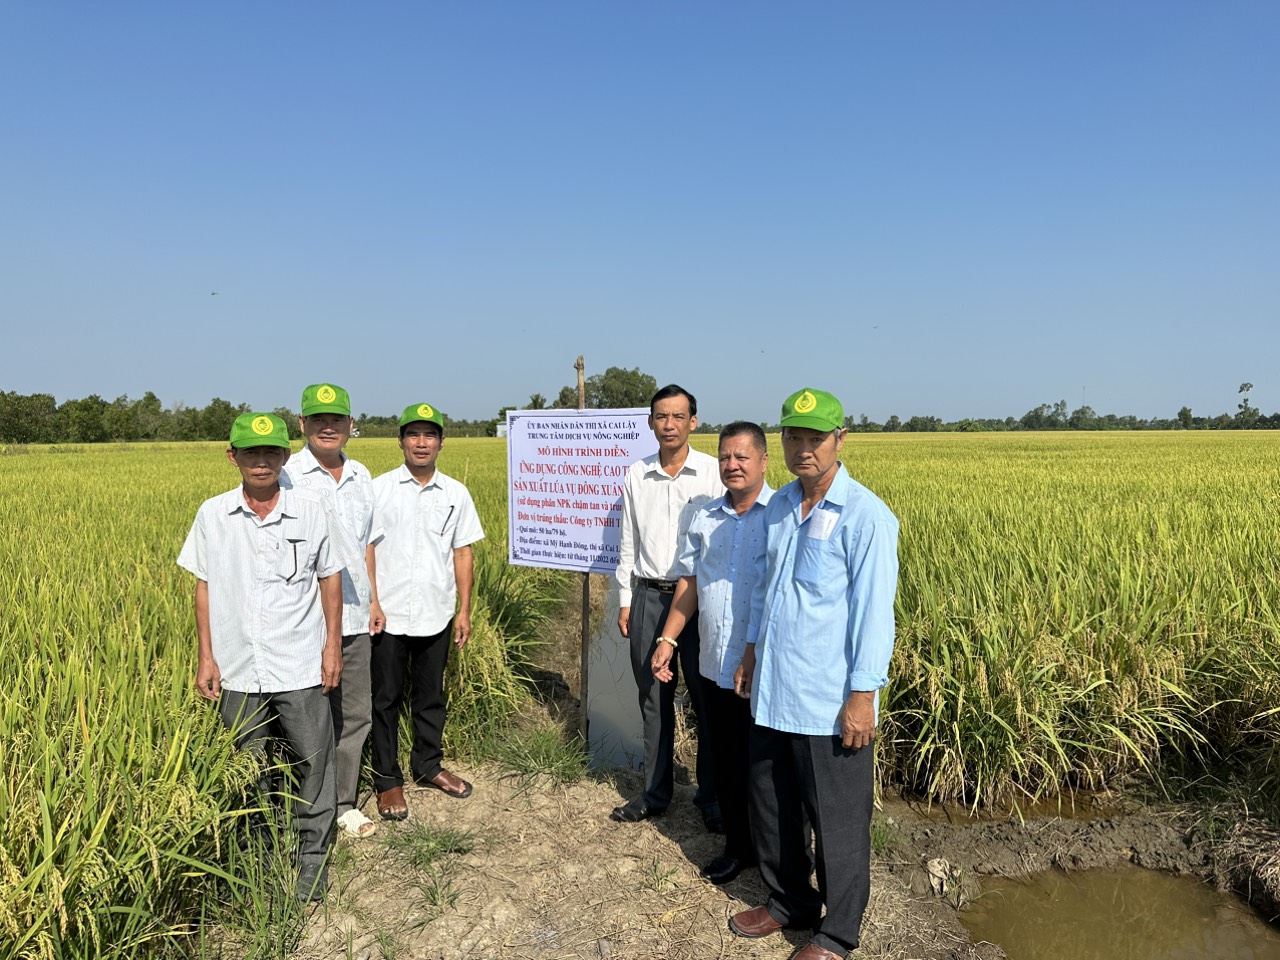 Nông dân Việt Nam xuất sắc đến từ tỉnh Tiền Giang tặng sổ bảo hiểm xã hội tự nguyện cho nông dân- Ảnh 2.